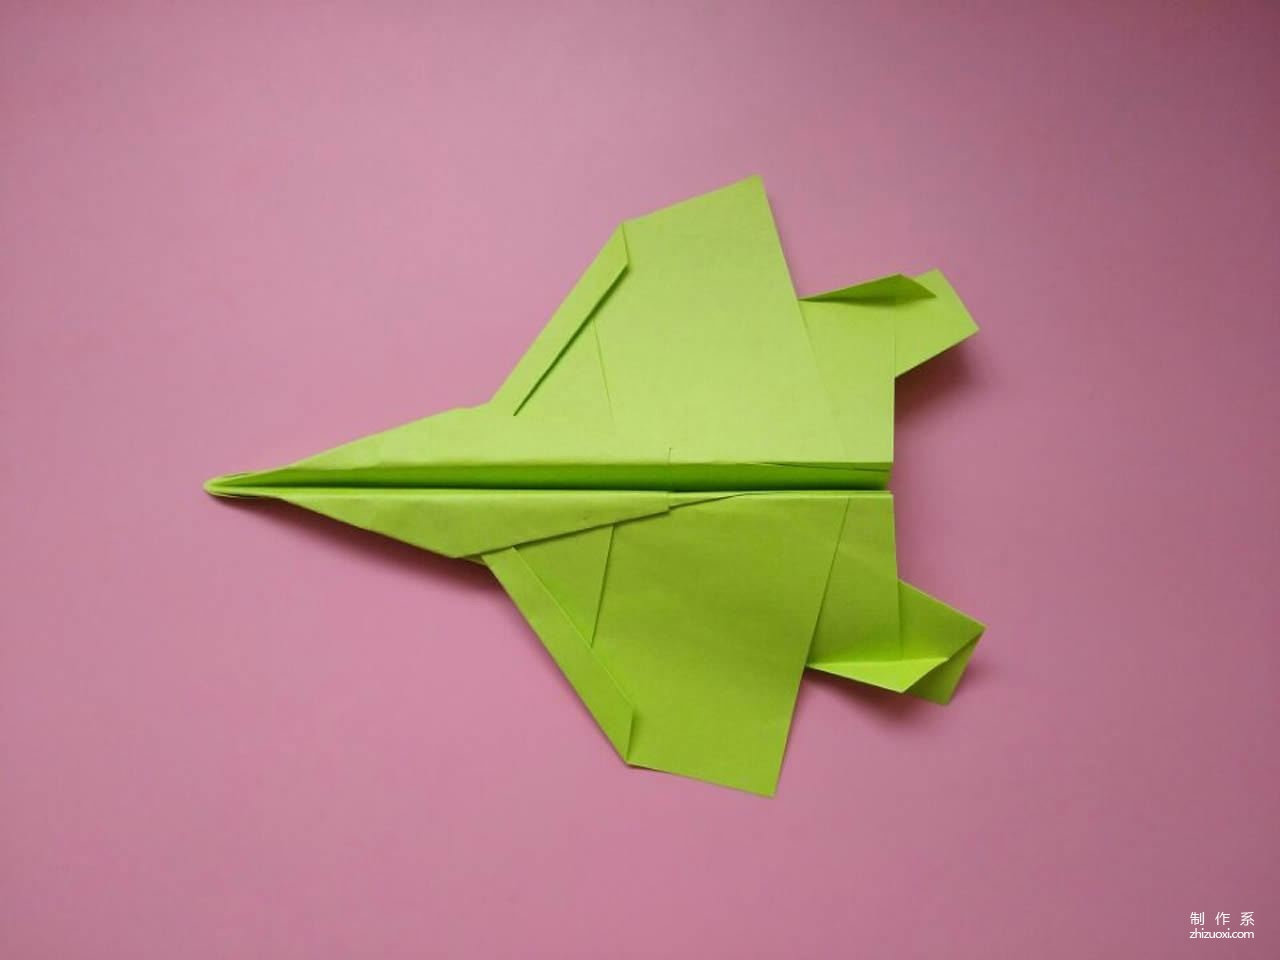 f15战斗纸飞机折纸,只要几步就做好,儿童益智手工折纸